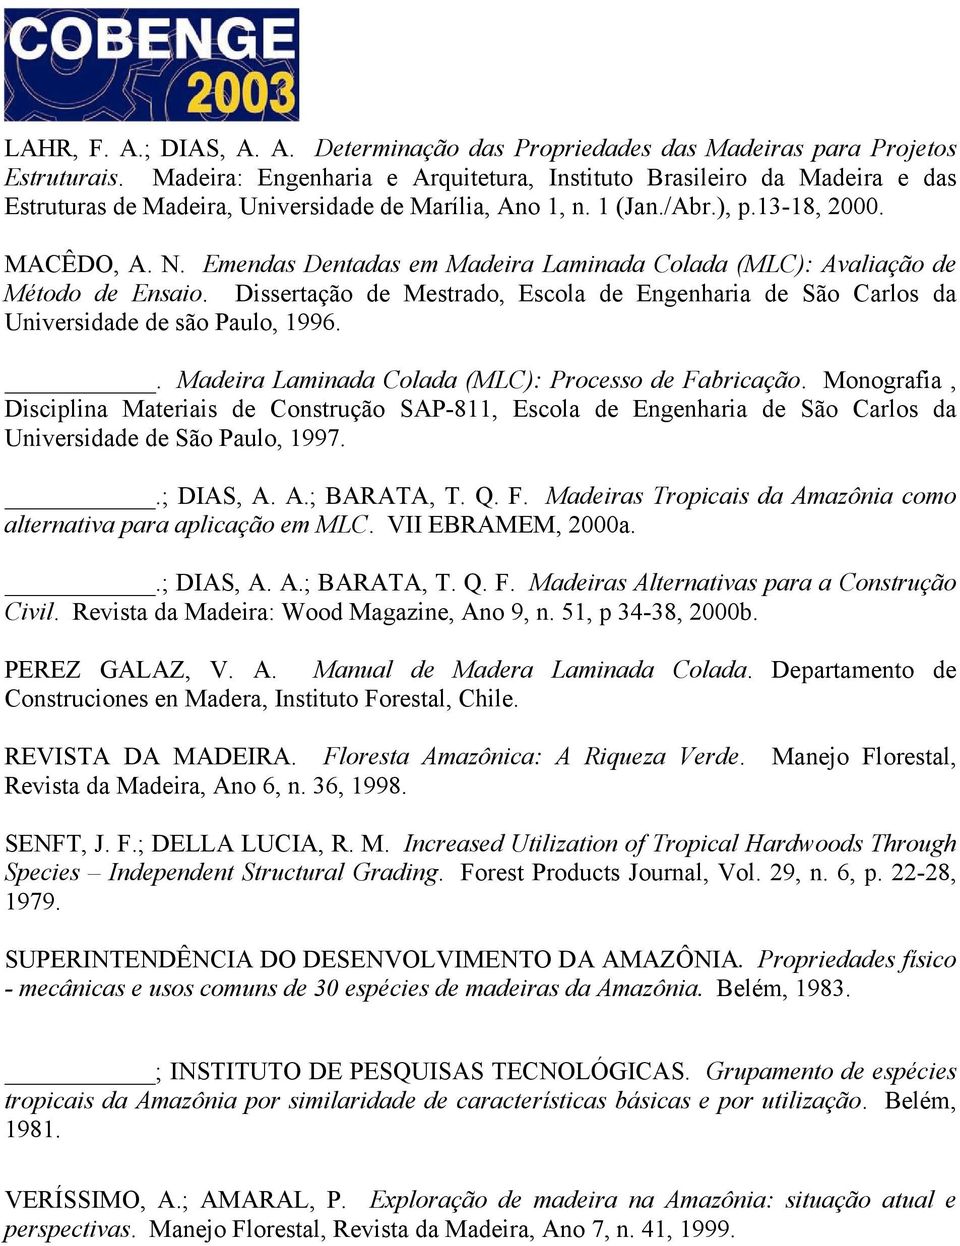 Emendas Dentadas em Madeira Laminada Colada (MLC): Avaliação de Método de Ensaio. Dissertação de Mestrado, Escola de Engenharia de São Carlos da Universidade de são Paulo, 1996.